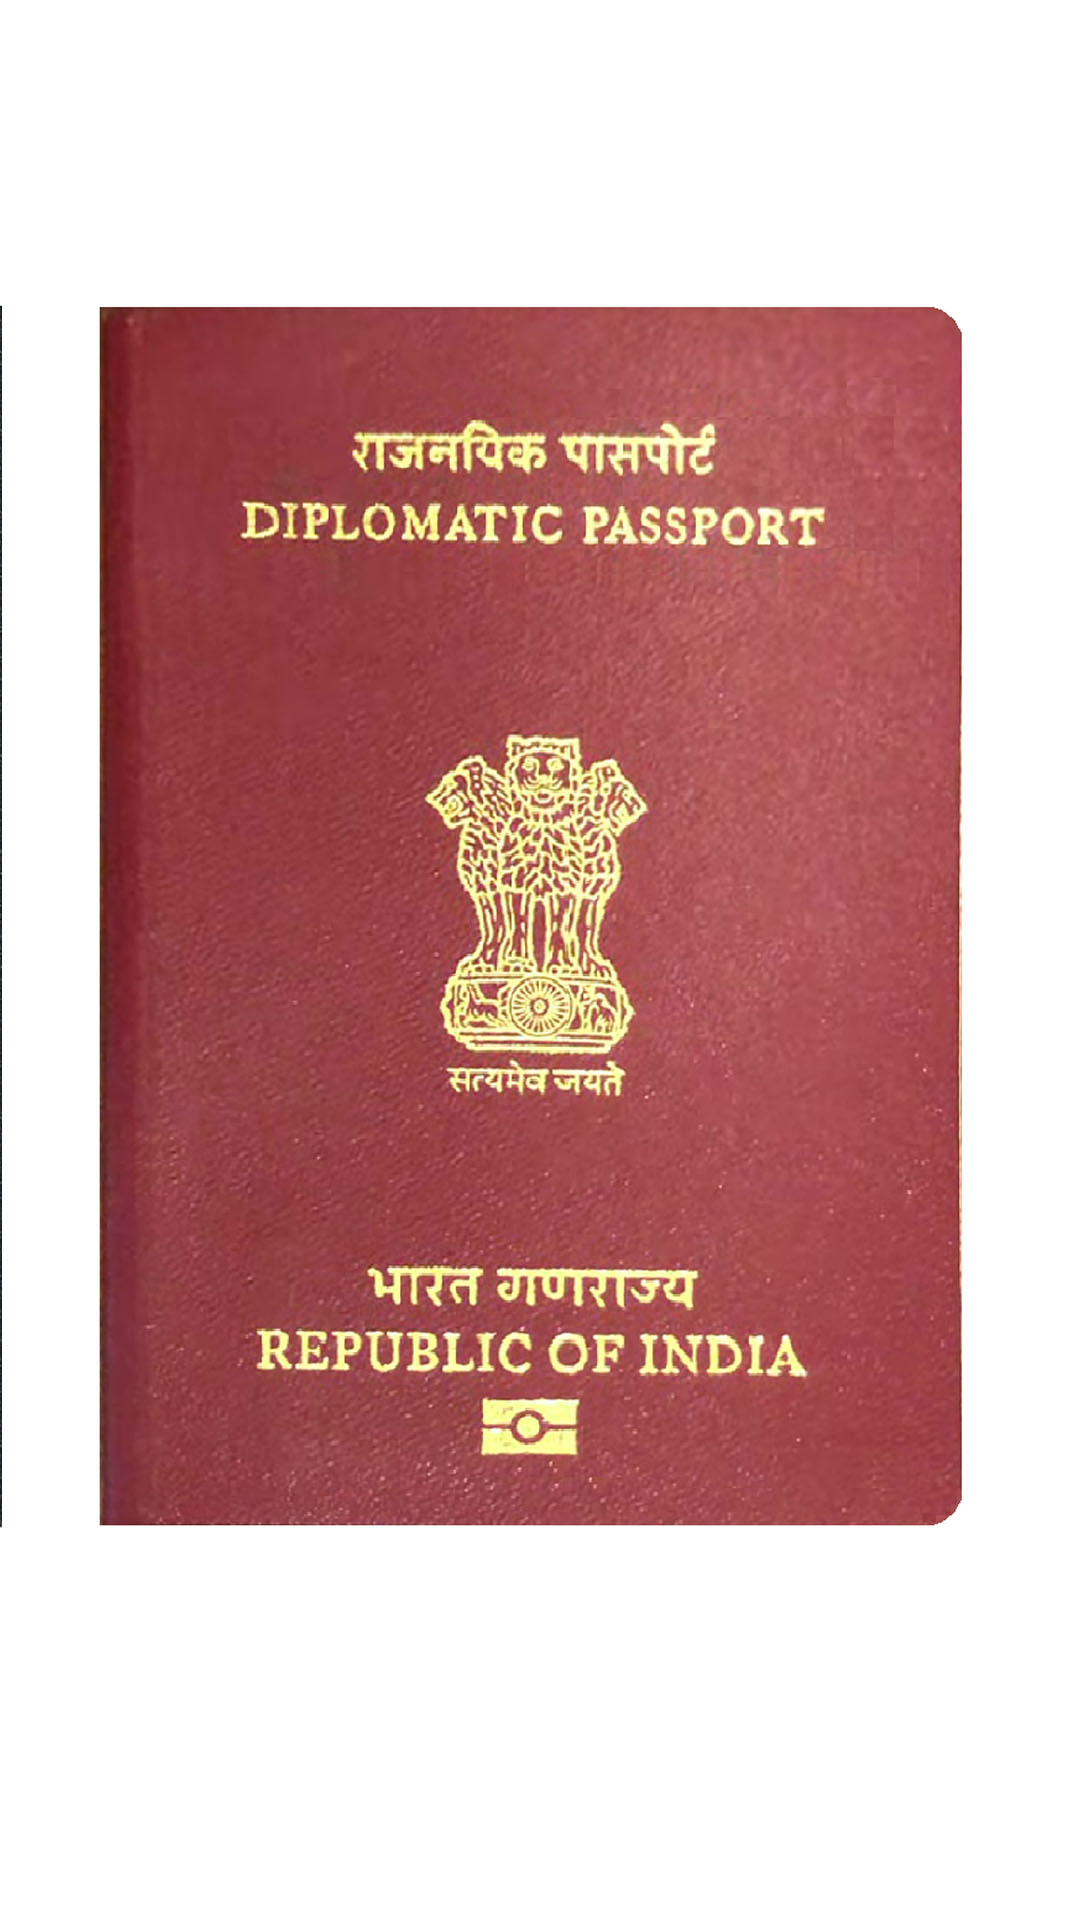 India passport